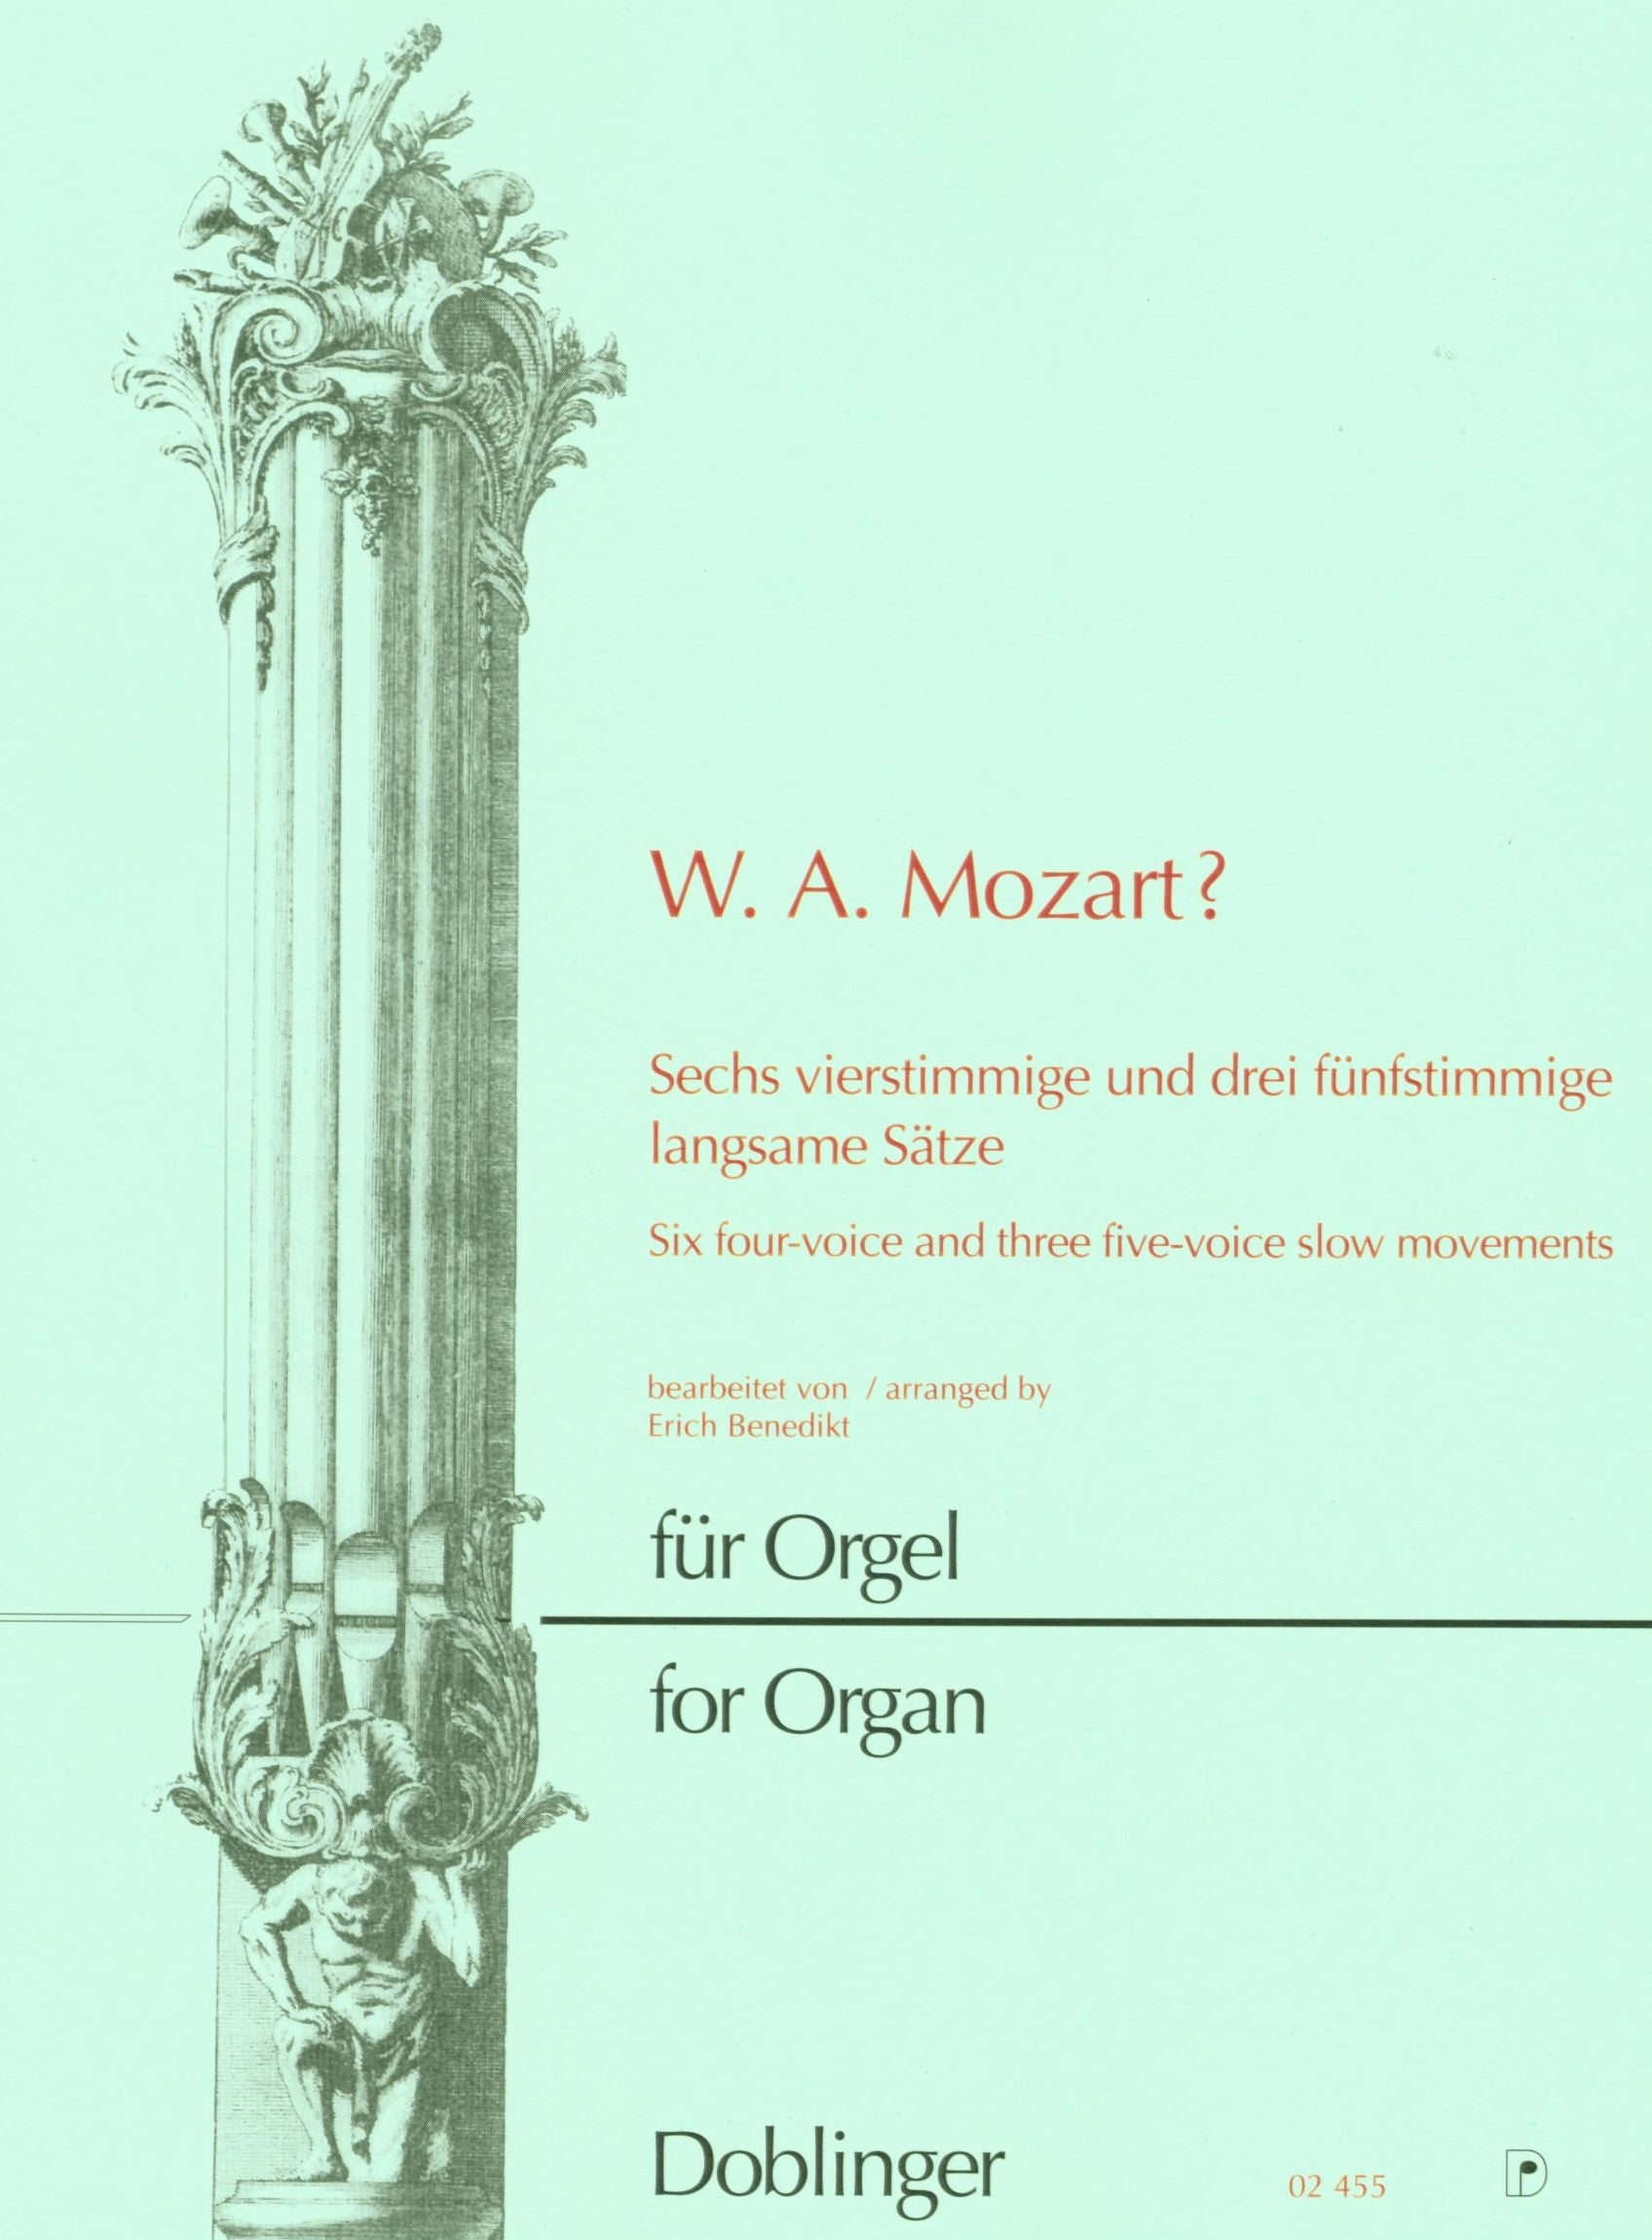 Mozart for Organ: 6 Four-Voice & 3 Five-Voice Slow Movements